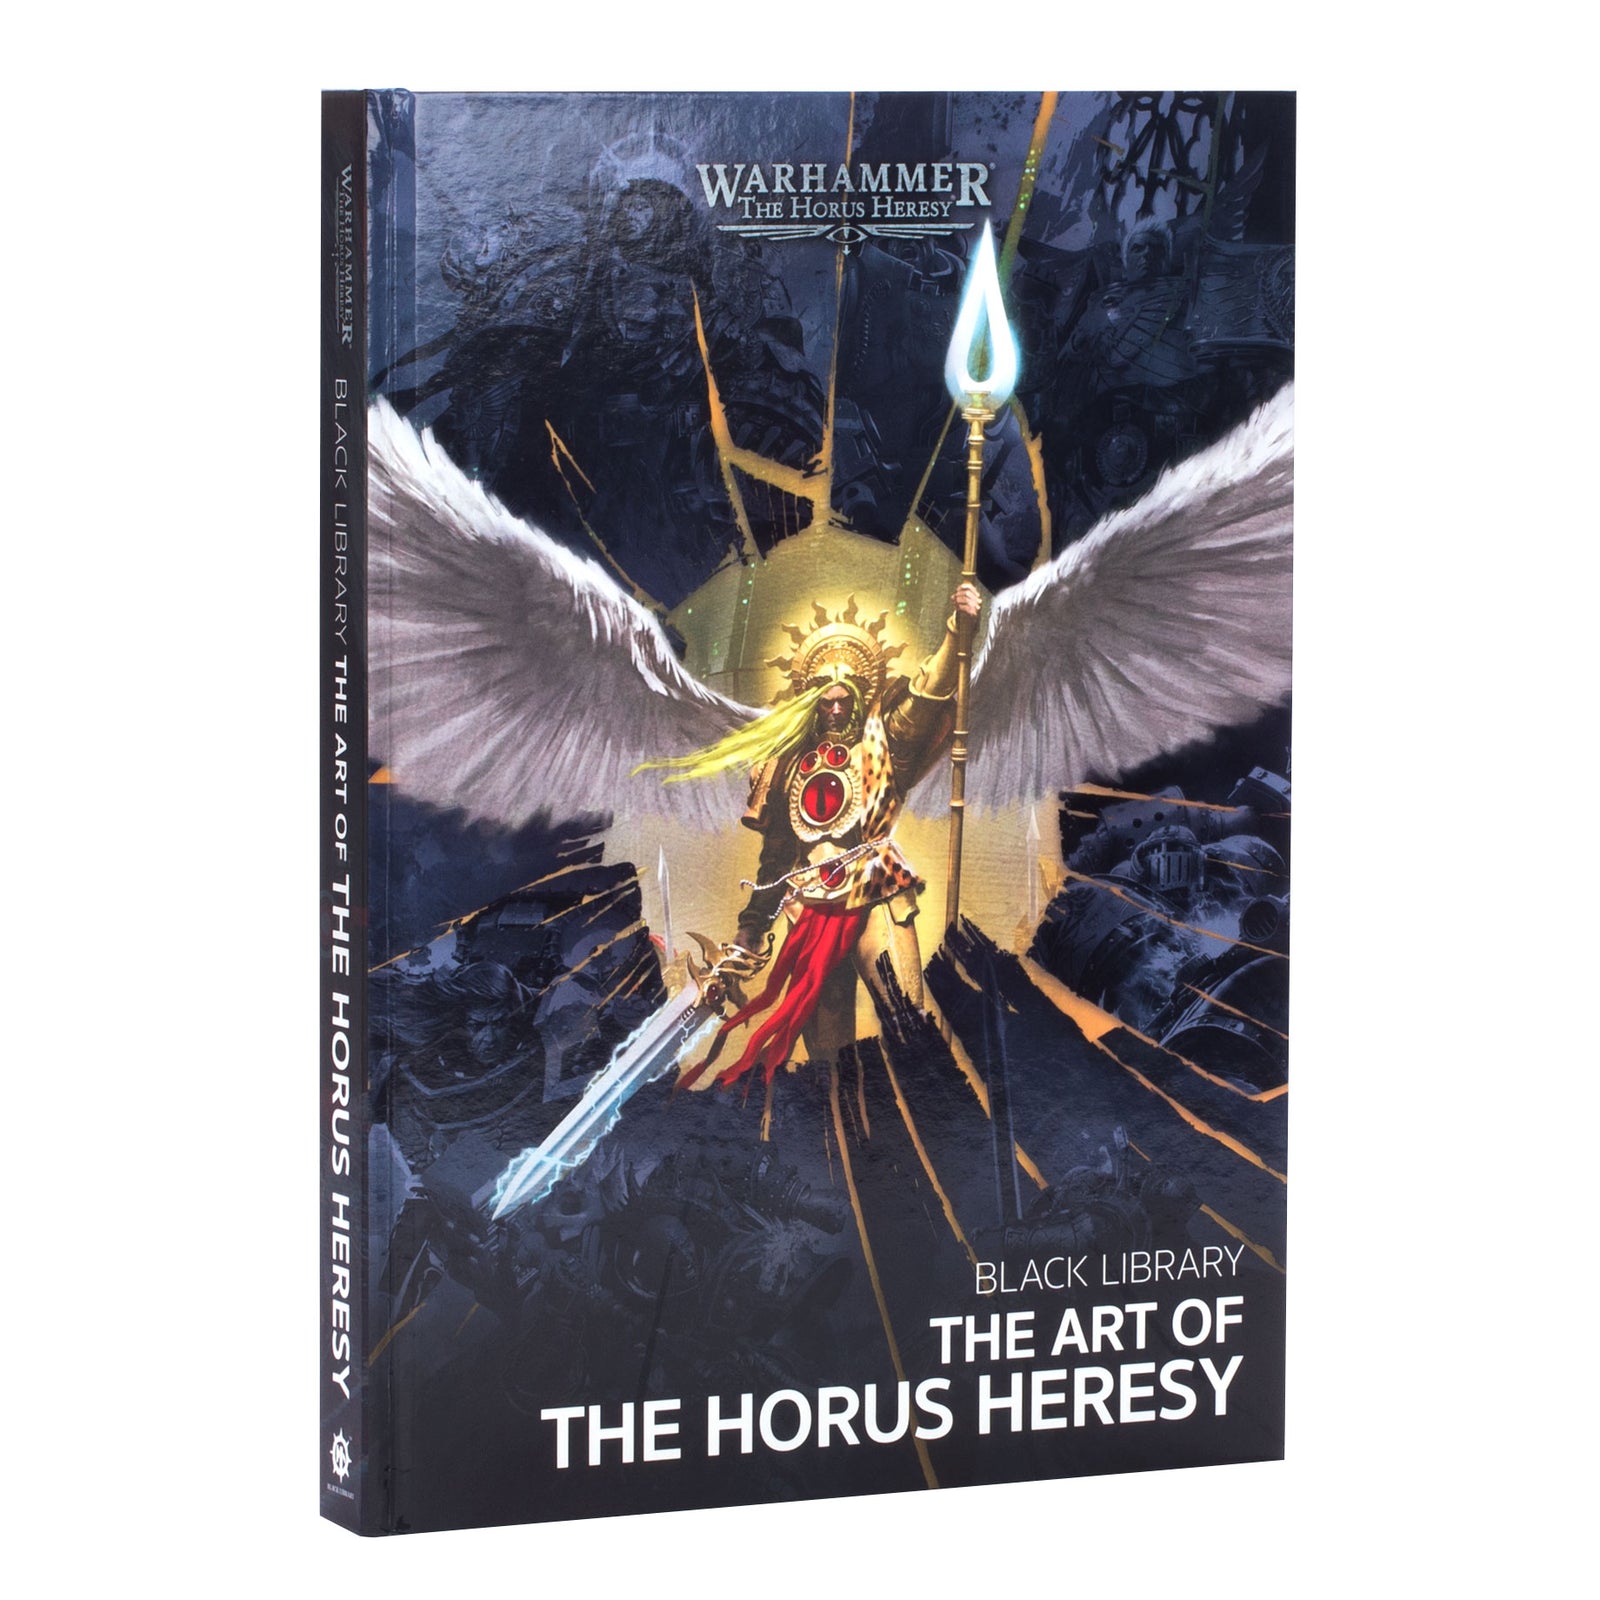 The Art of The Horus Heresy